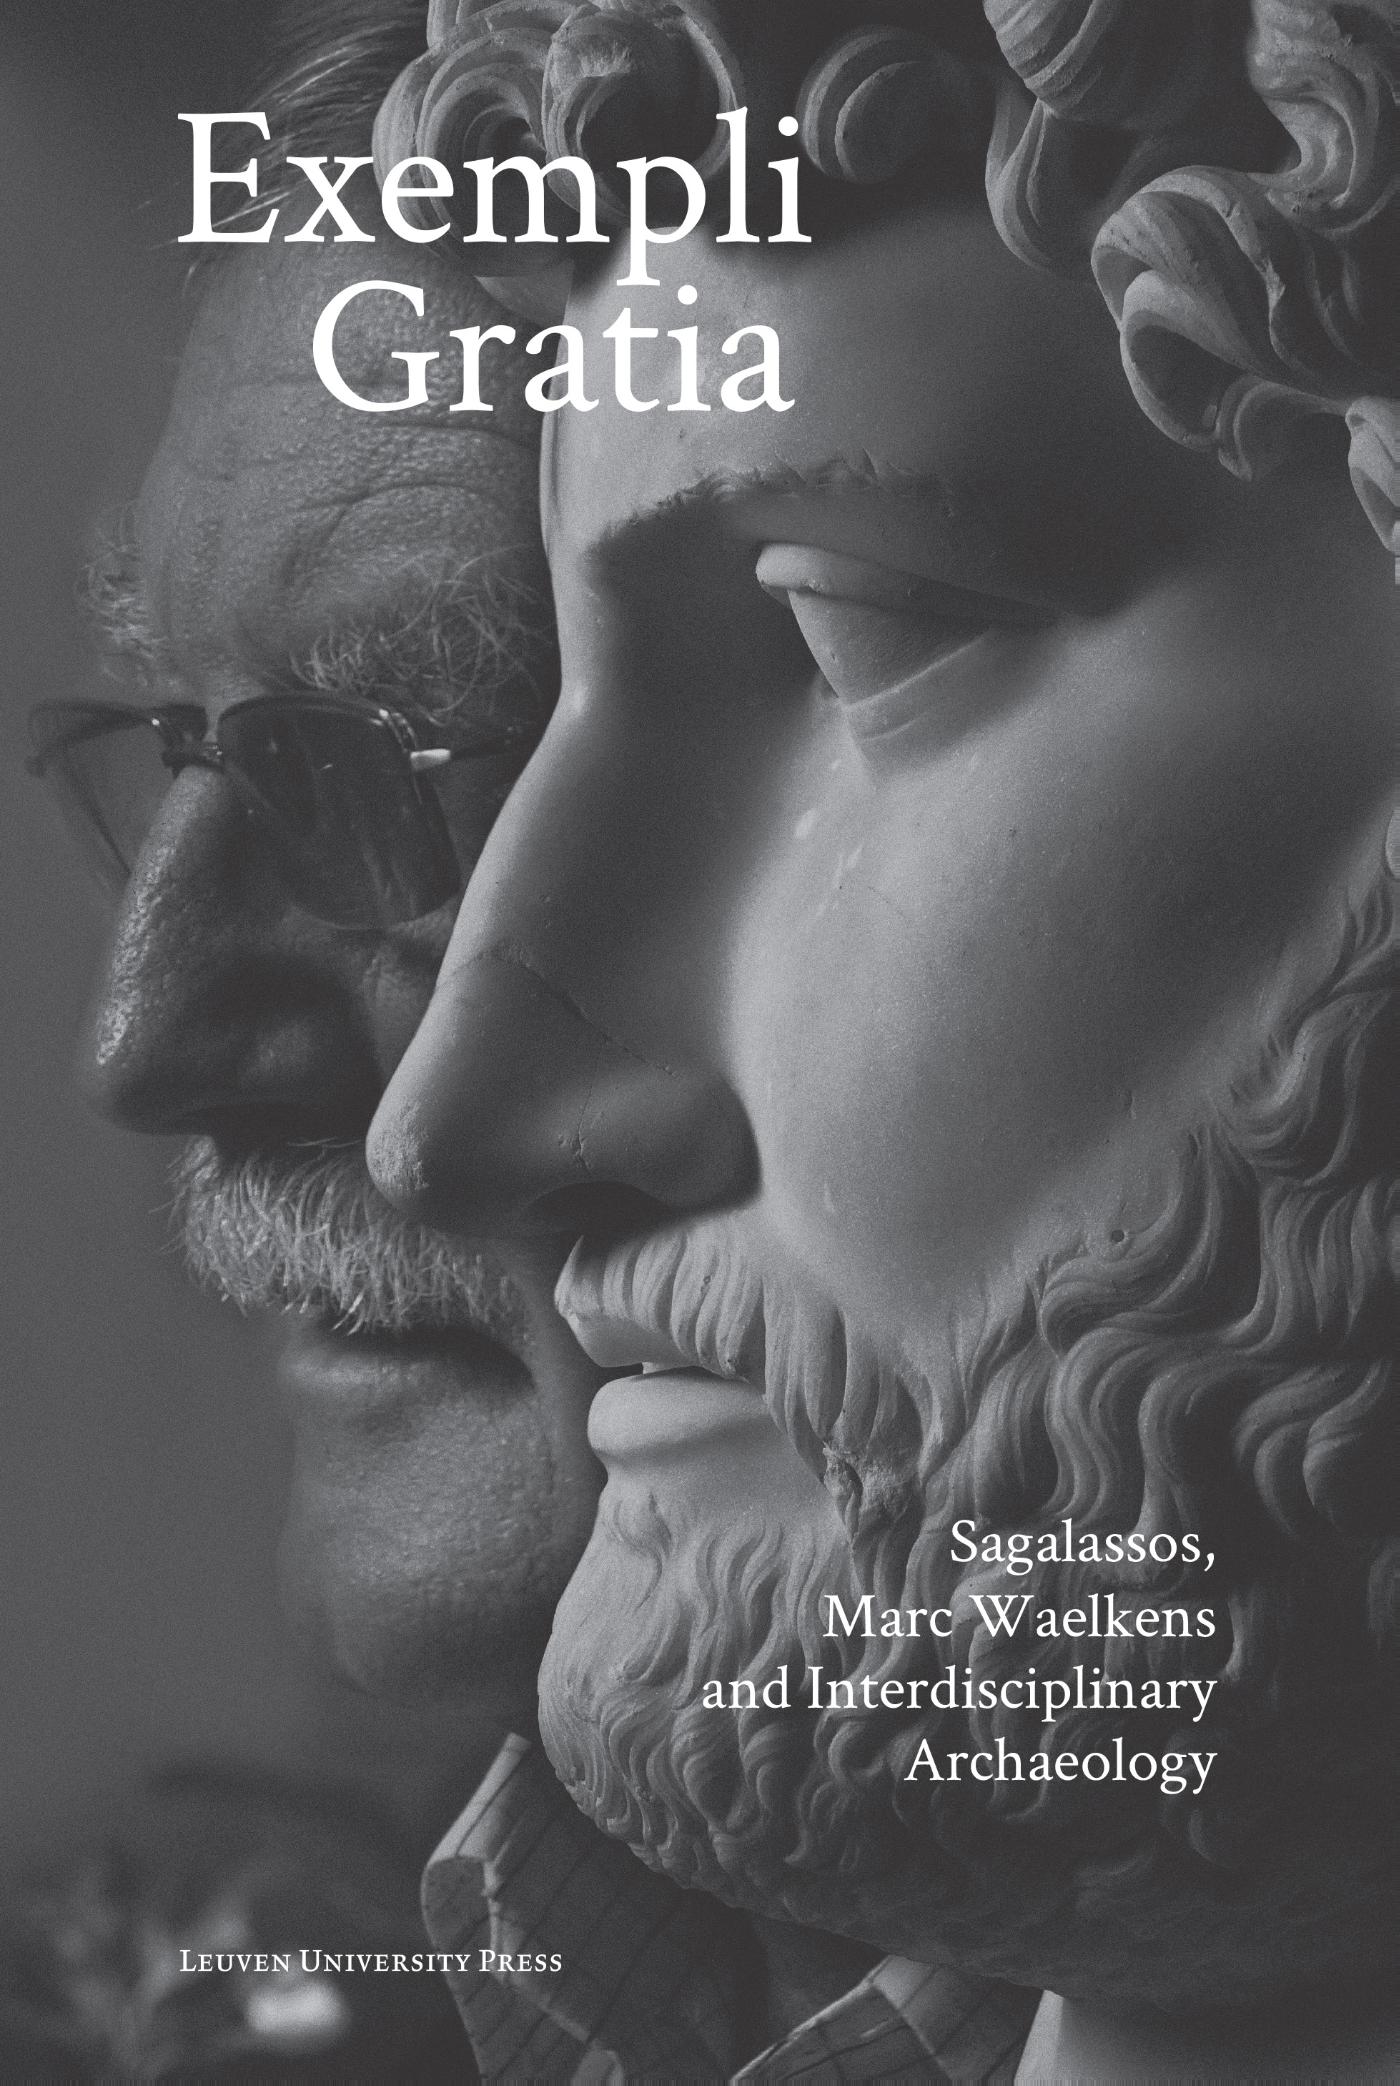 Exempli gratia (Ebook)